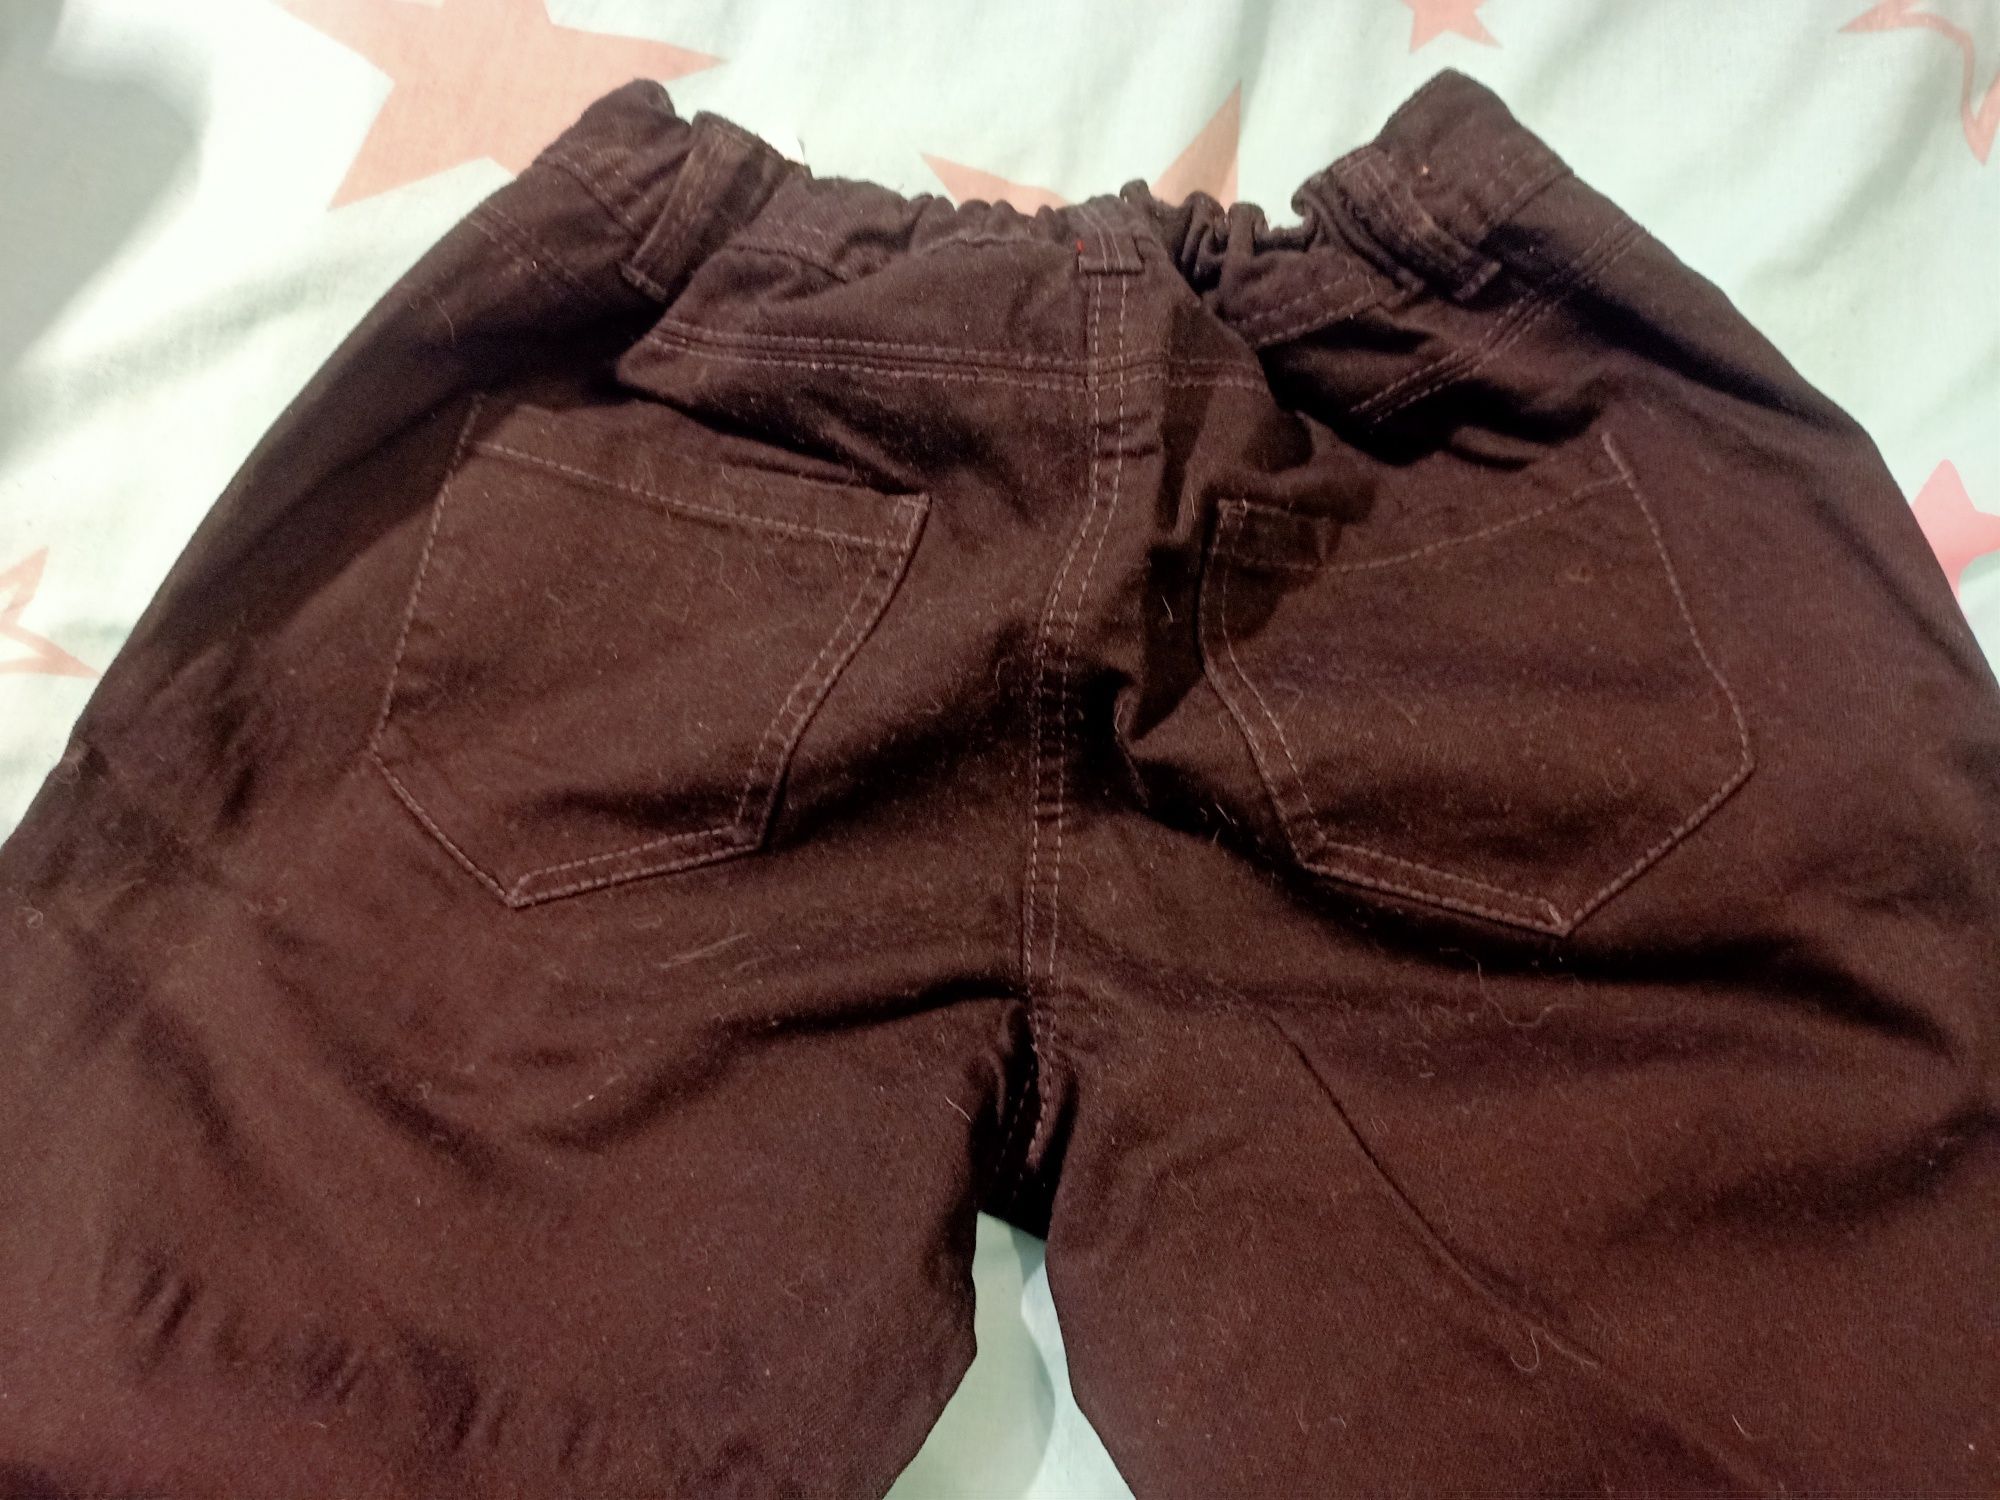 Легкі джинсові брюки чорні штани чоловічі, р.- 38.